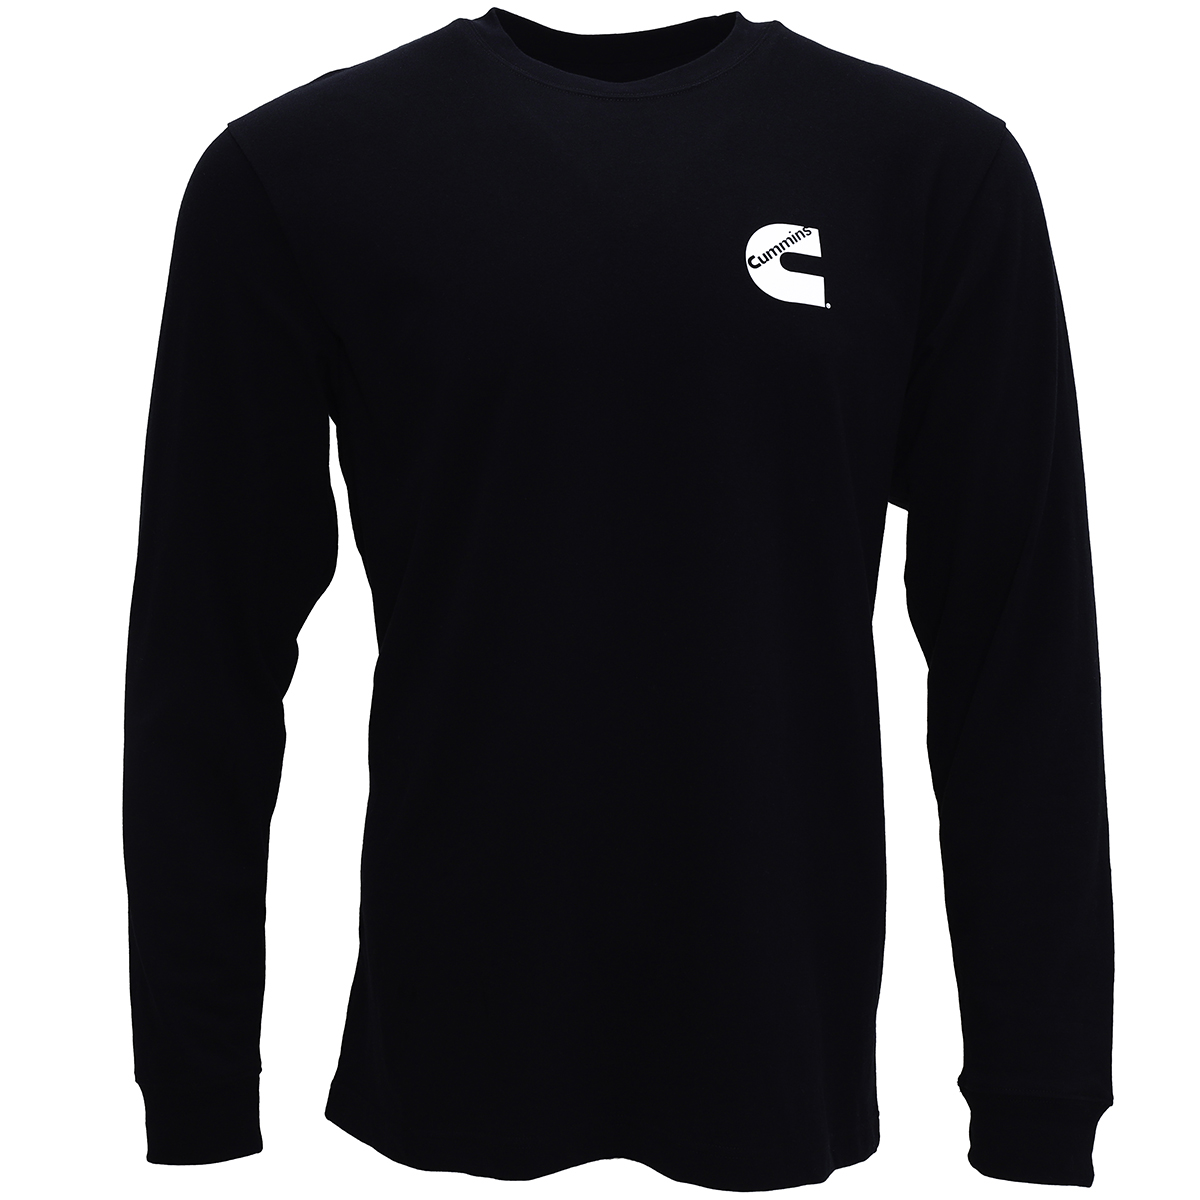 Cummins Unisex Long Sleeve T-shirt Black All Cotton Tee CMN4775 - Small